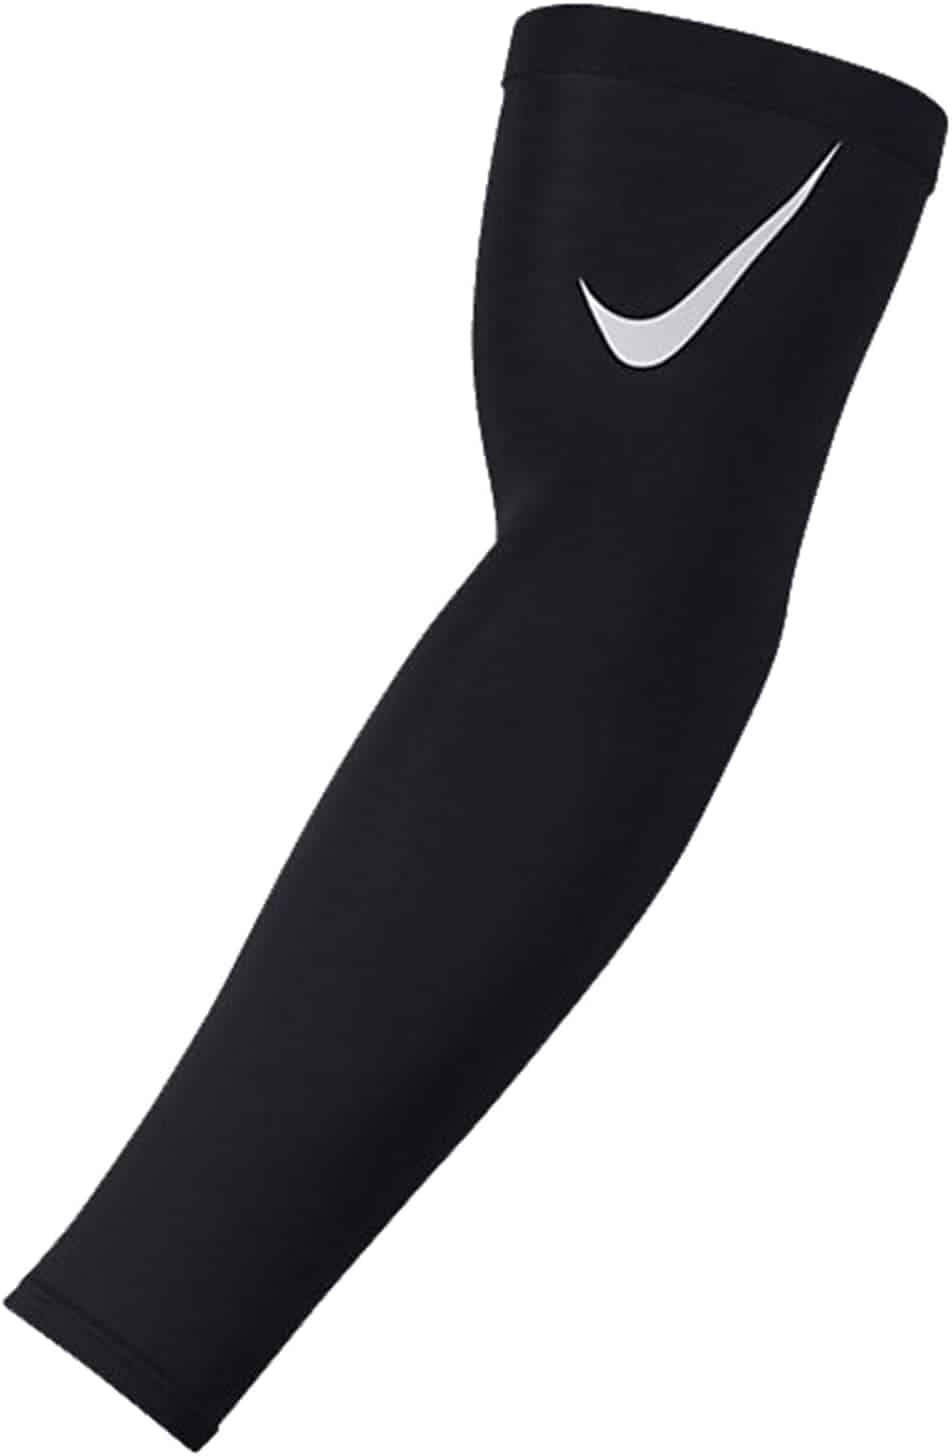 Sleeve Arm tsara indrindra tsy misy padding- Nike Pro Adult Dri-FIT 3.0 Arm Sleeves